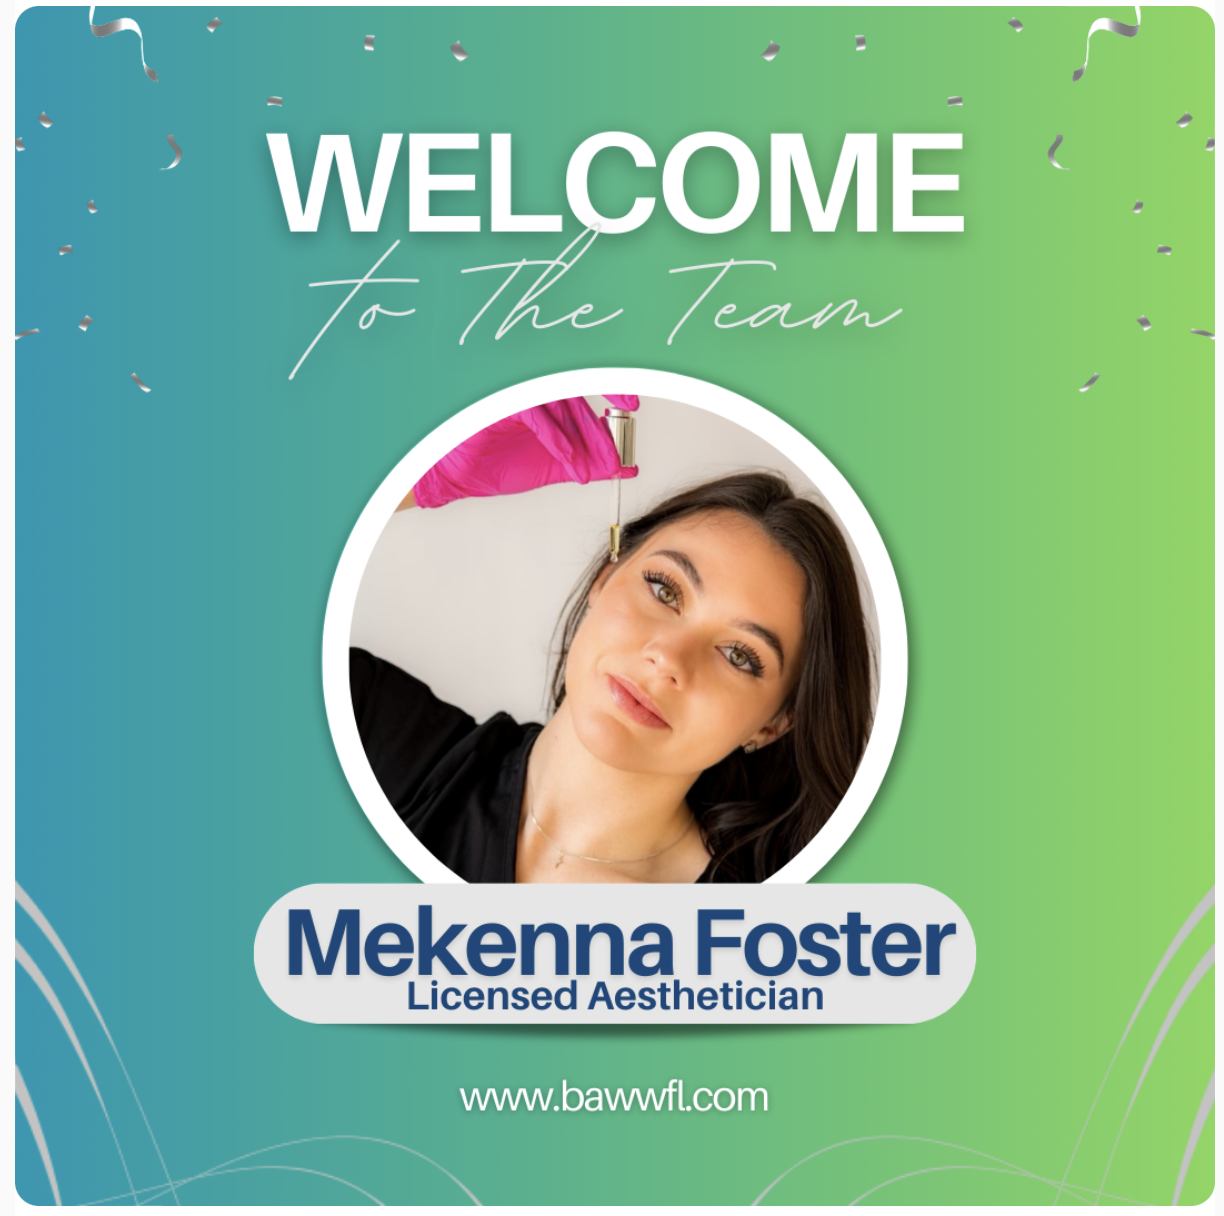 Mekenna Foster Aesthetician joins Bay Area Aesthetics & Wellness FL